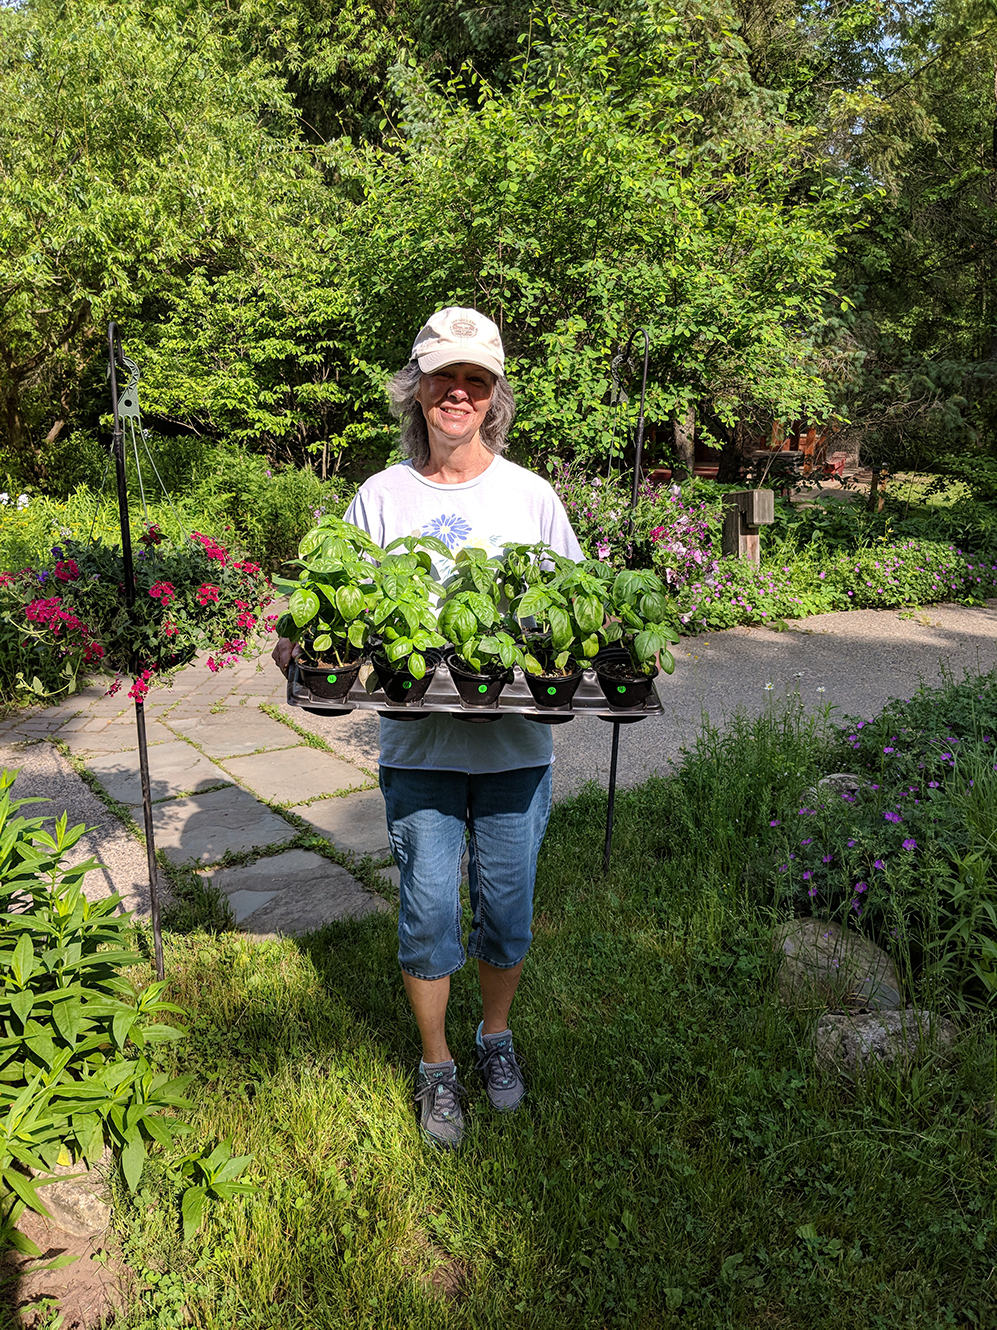 Linda Garner with plants